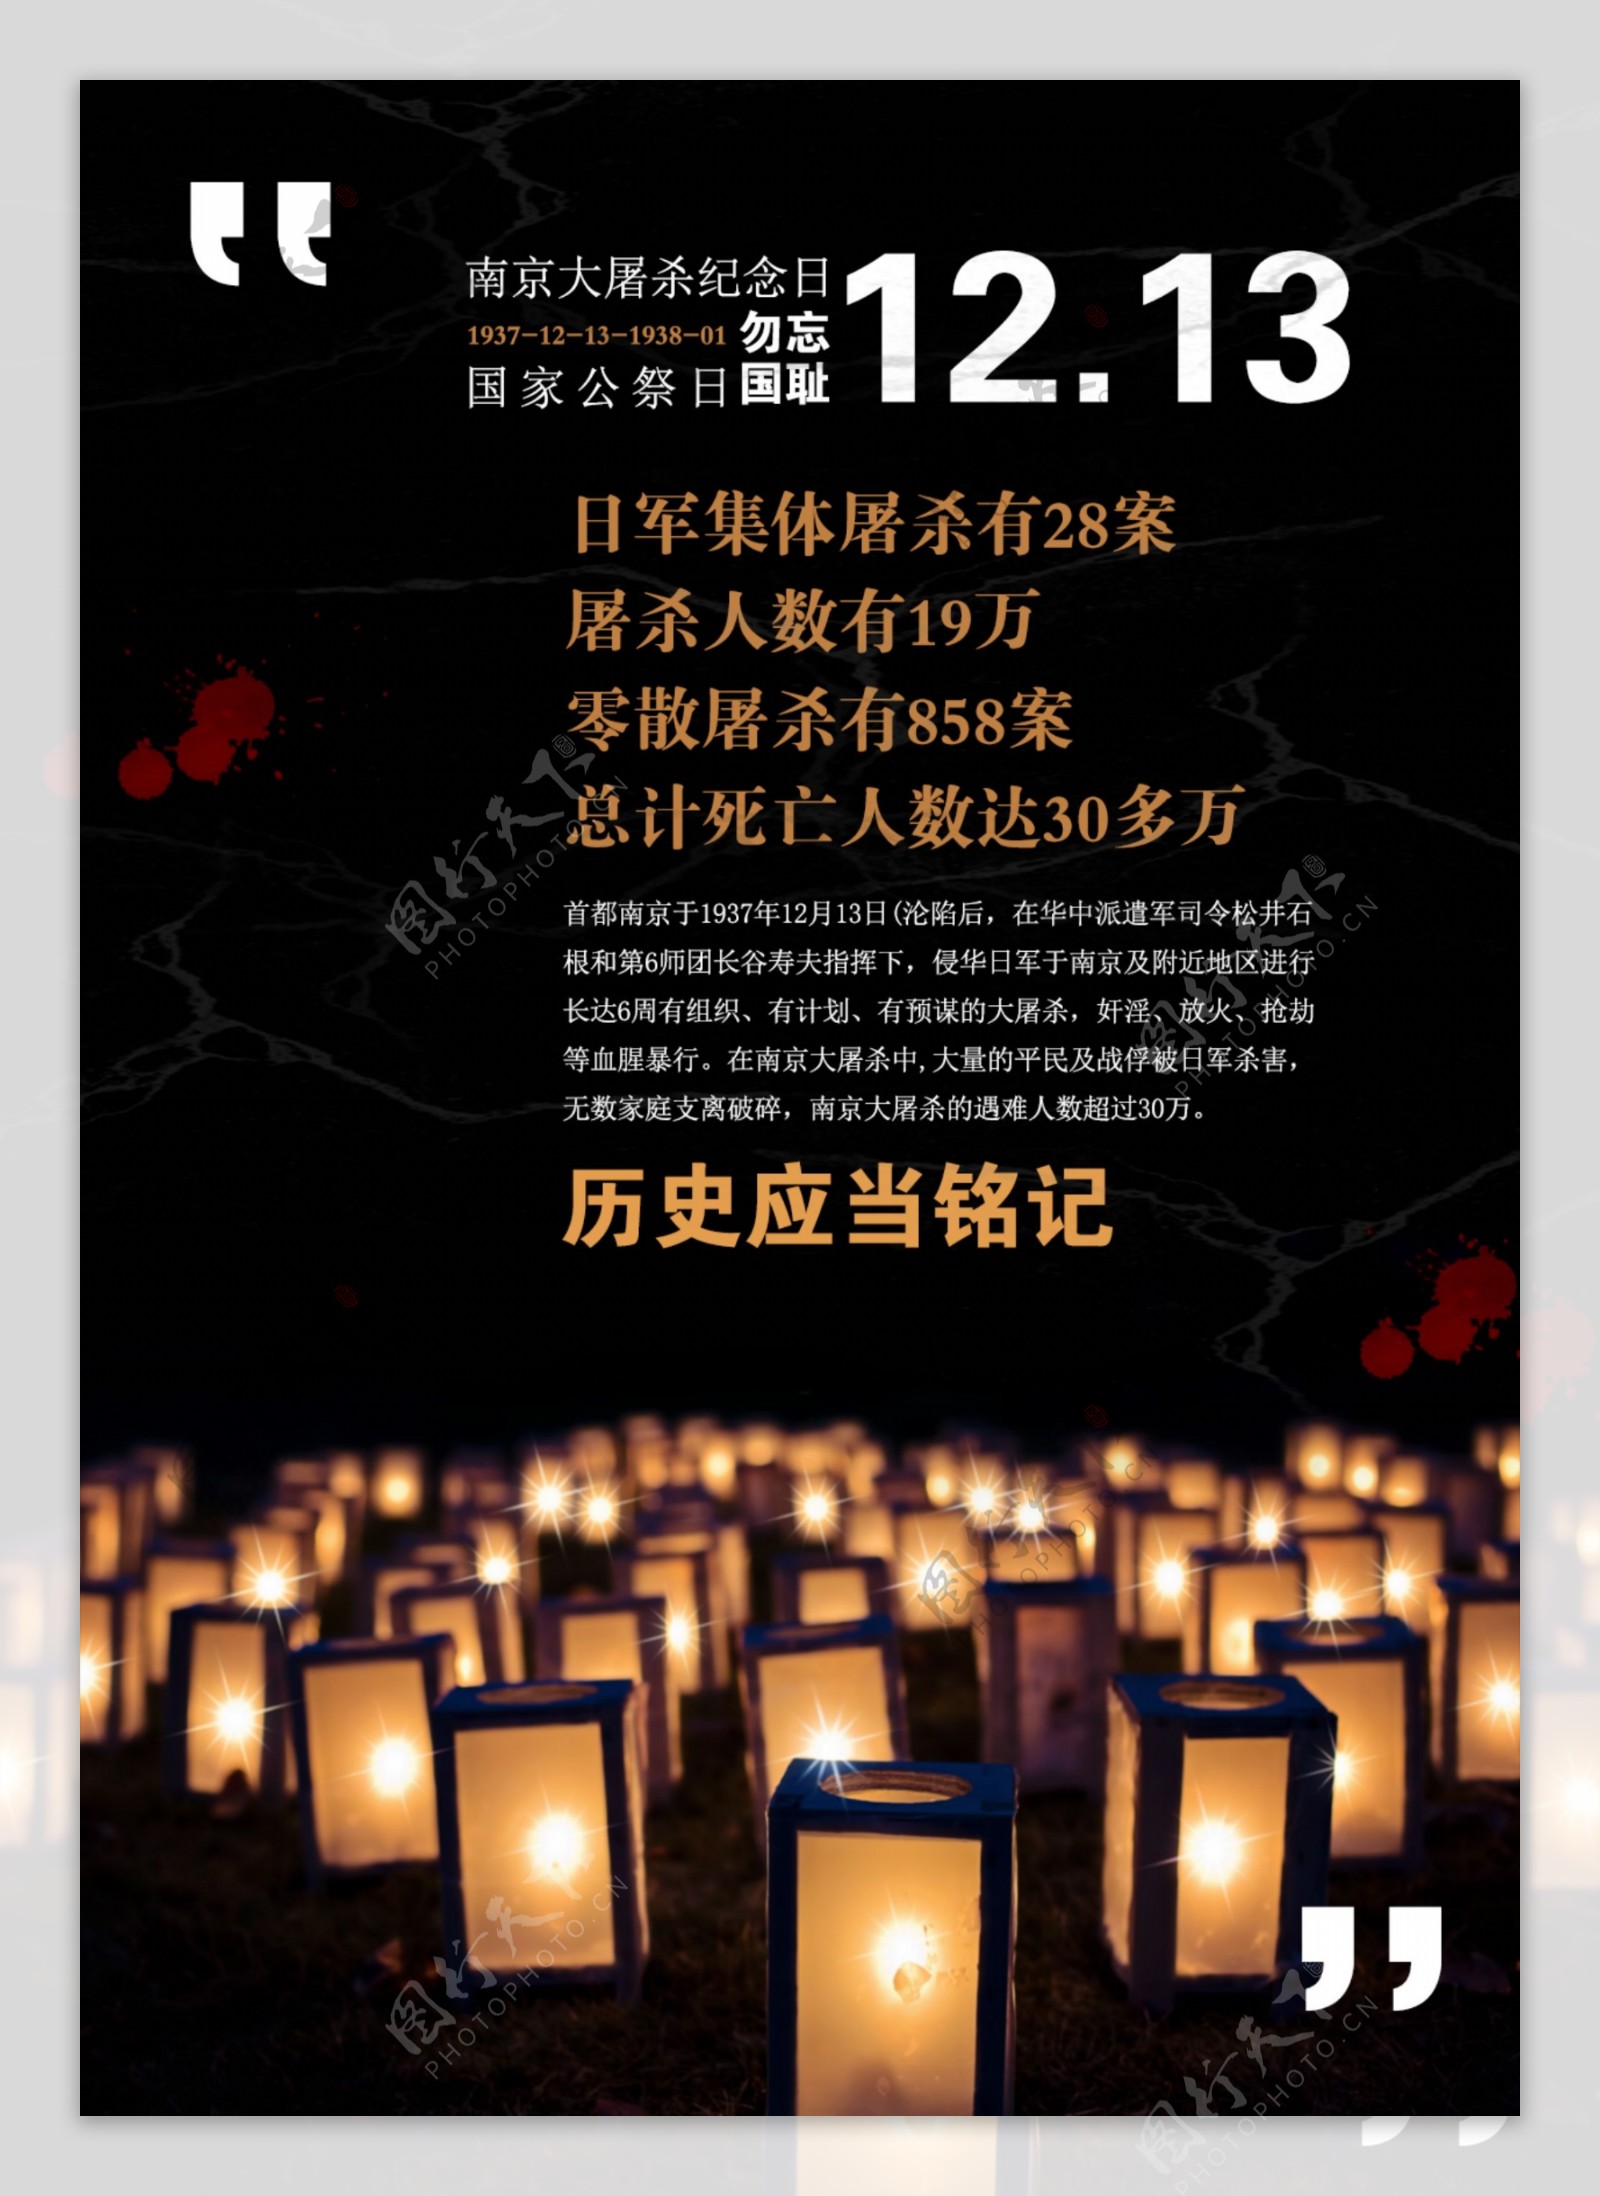 南京大屠杀国家公祭日纪念日